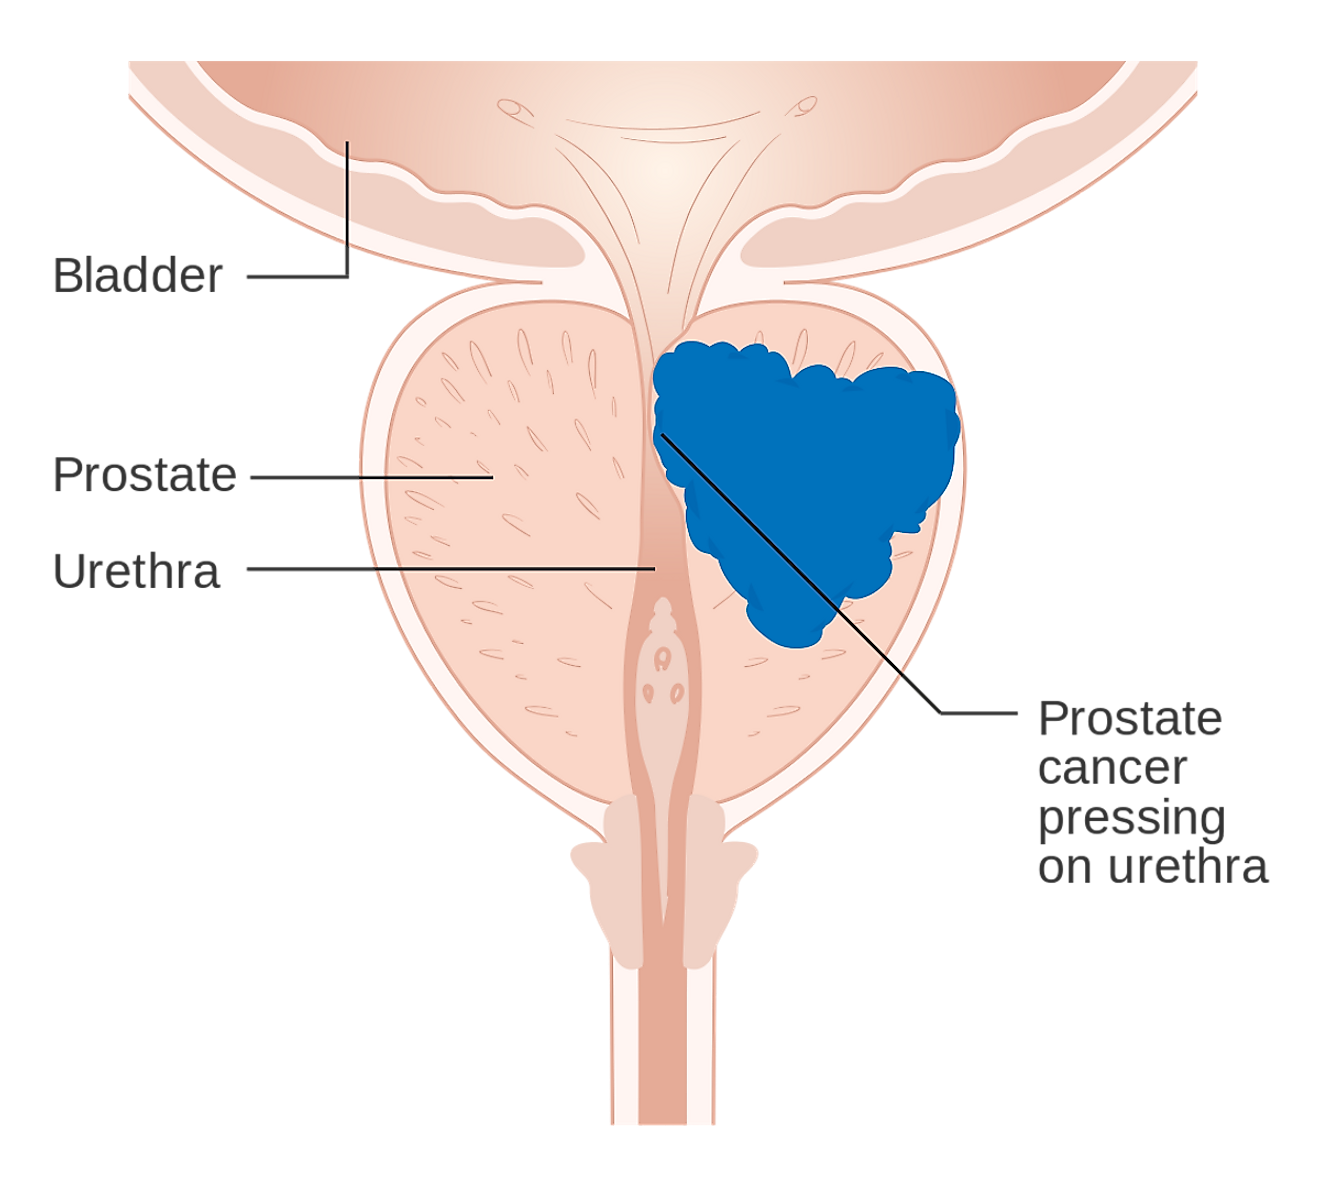 Diagrama do câncer de próstata pressionando a uretra, o que pode causar sintomas.  Crédito da imagem: Cancer Research UK / Wikimedia.org